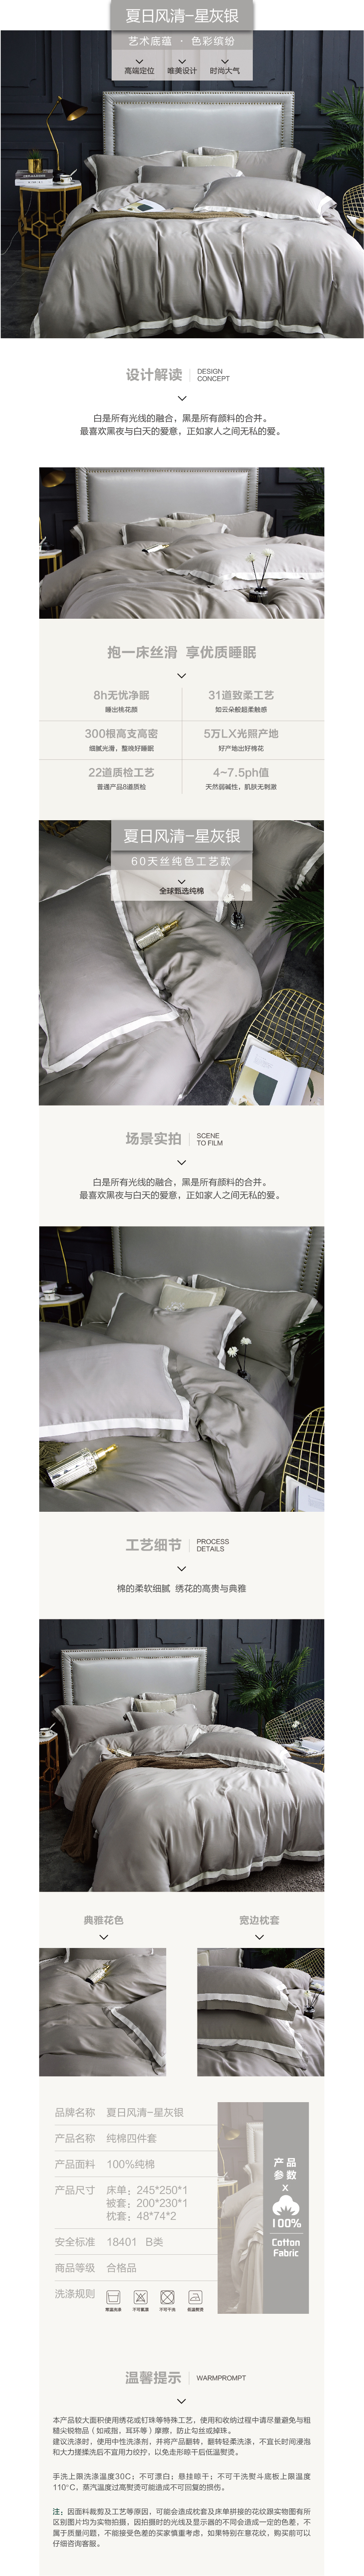 床上用品 纯棉四件套 蕾丝工艺 60天丝纯色工艺系列 星灰银